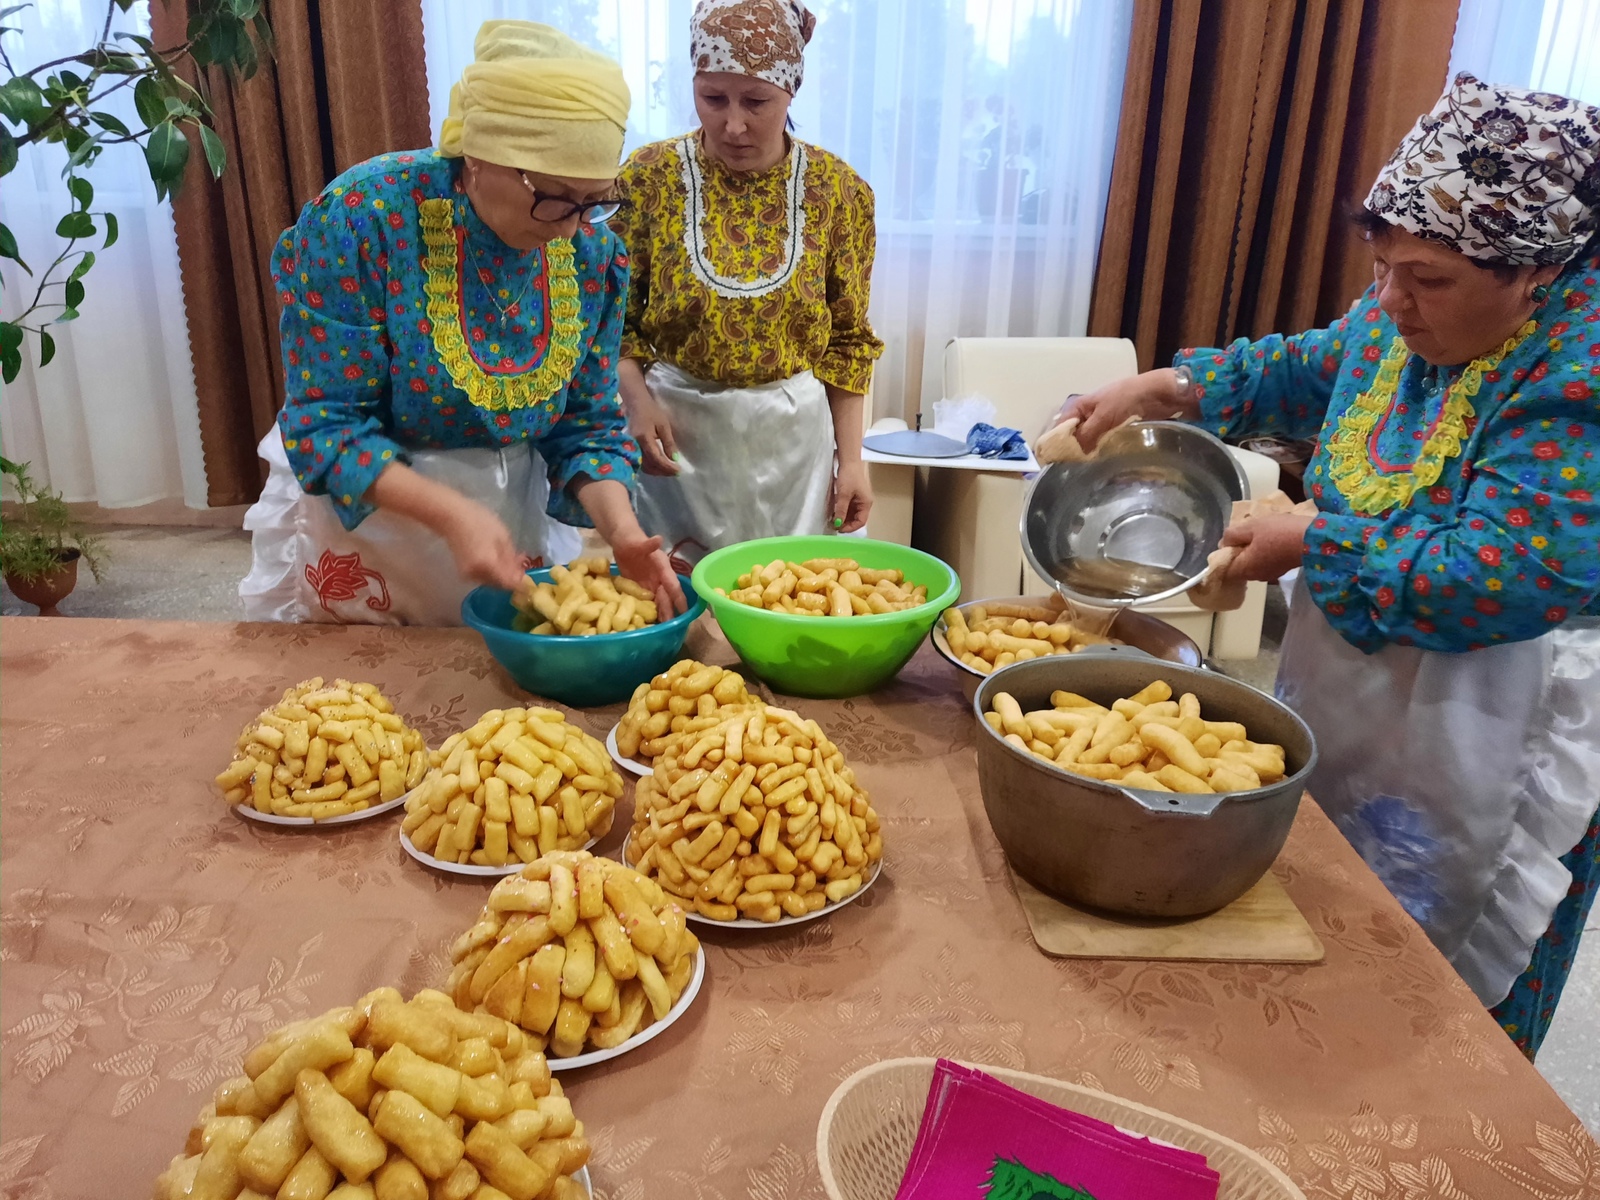 Работники Новокаинлыковского сельского дома организовали патриотическую акцию по приготовлению национального блюда для участников в специальной военной операции